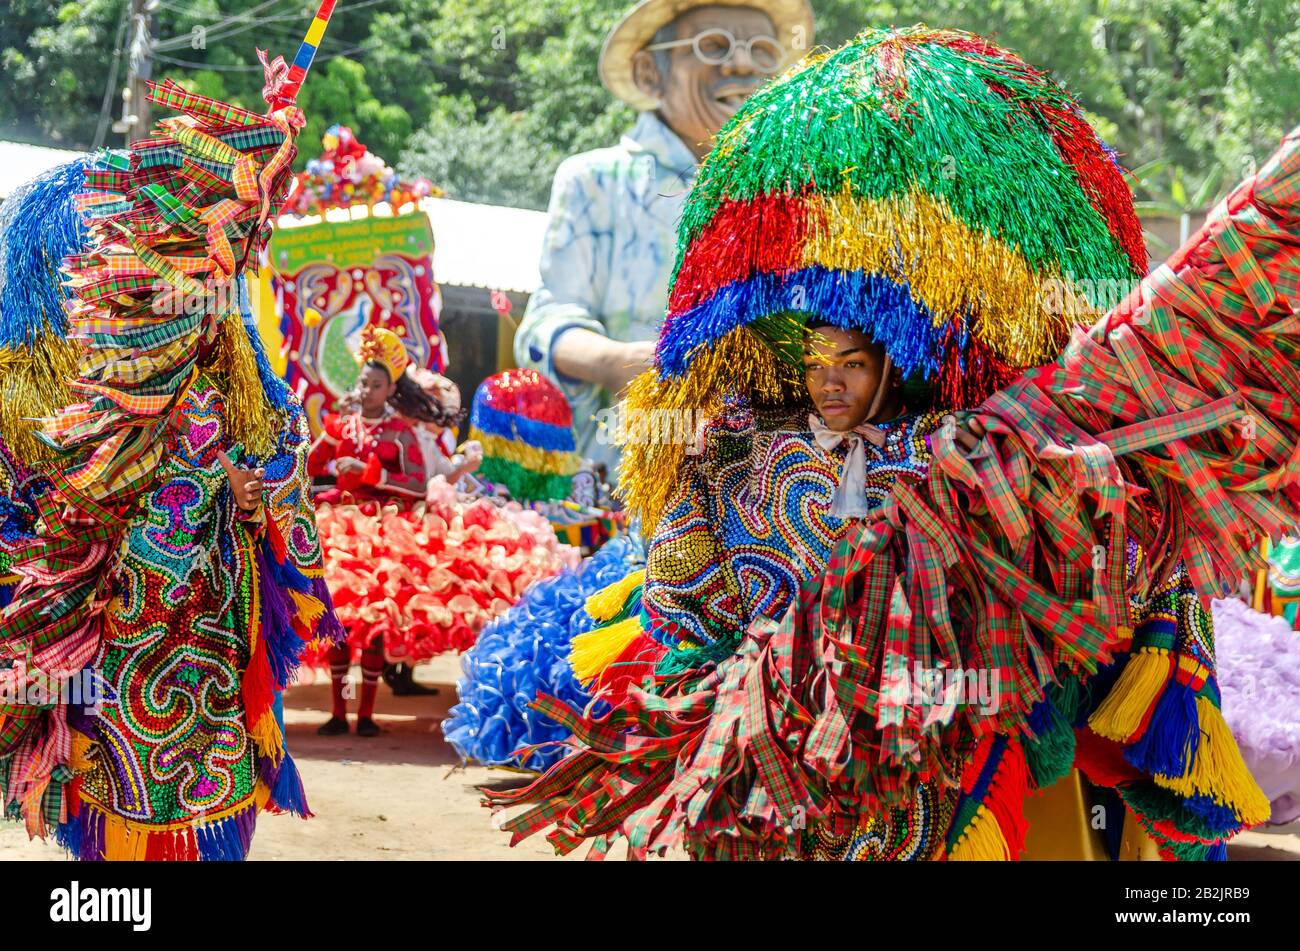 Februar 2020, Brasilianisches Karneval. Popular Culture, Meeting of 'Maracatus de baque solto' ('ländliches Maracatu'), Musik und Tanz typisch für Pernambuco. Stockfoto